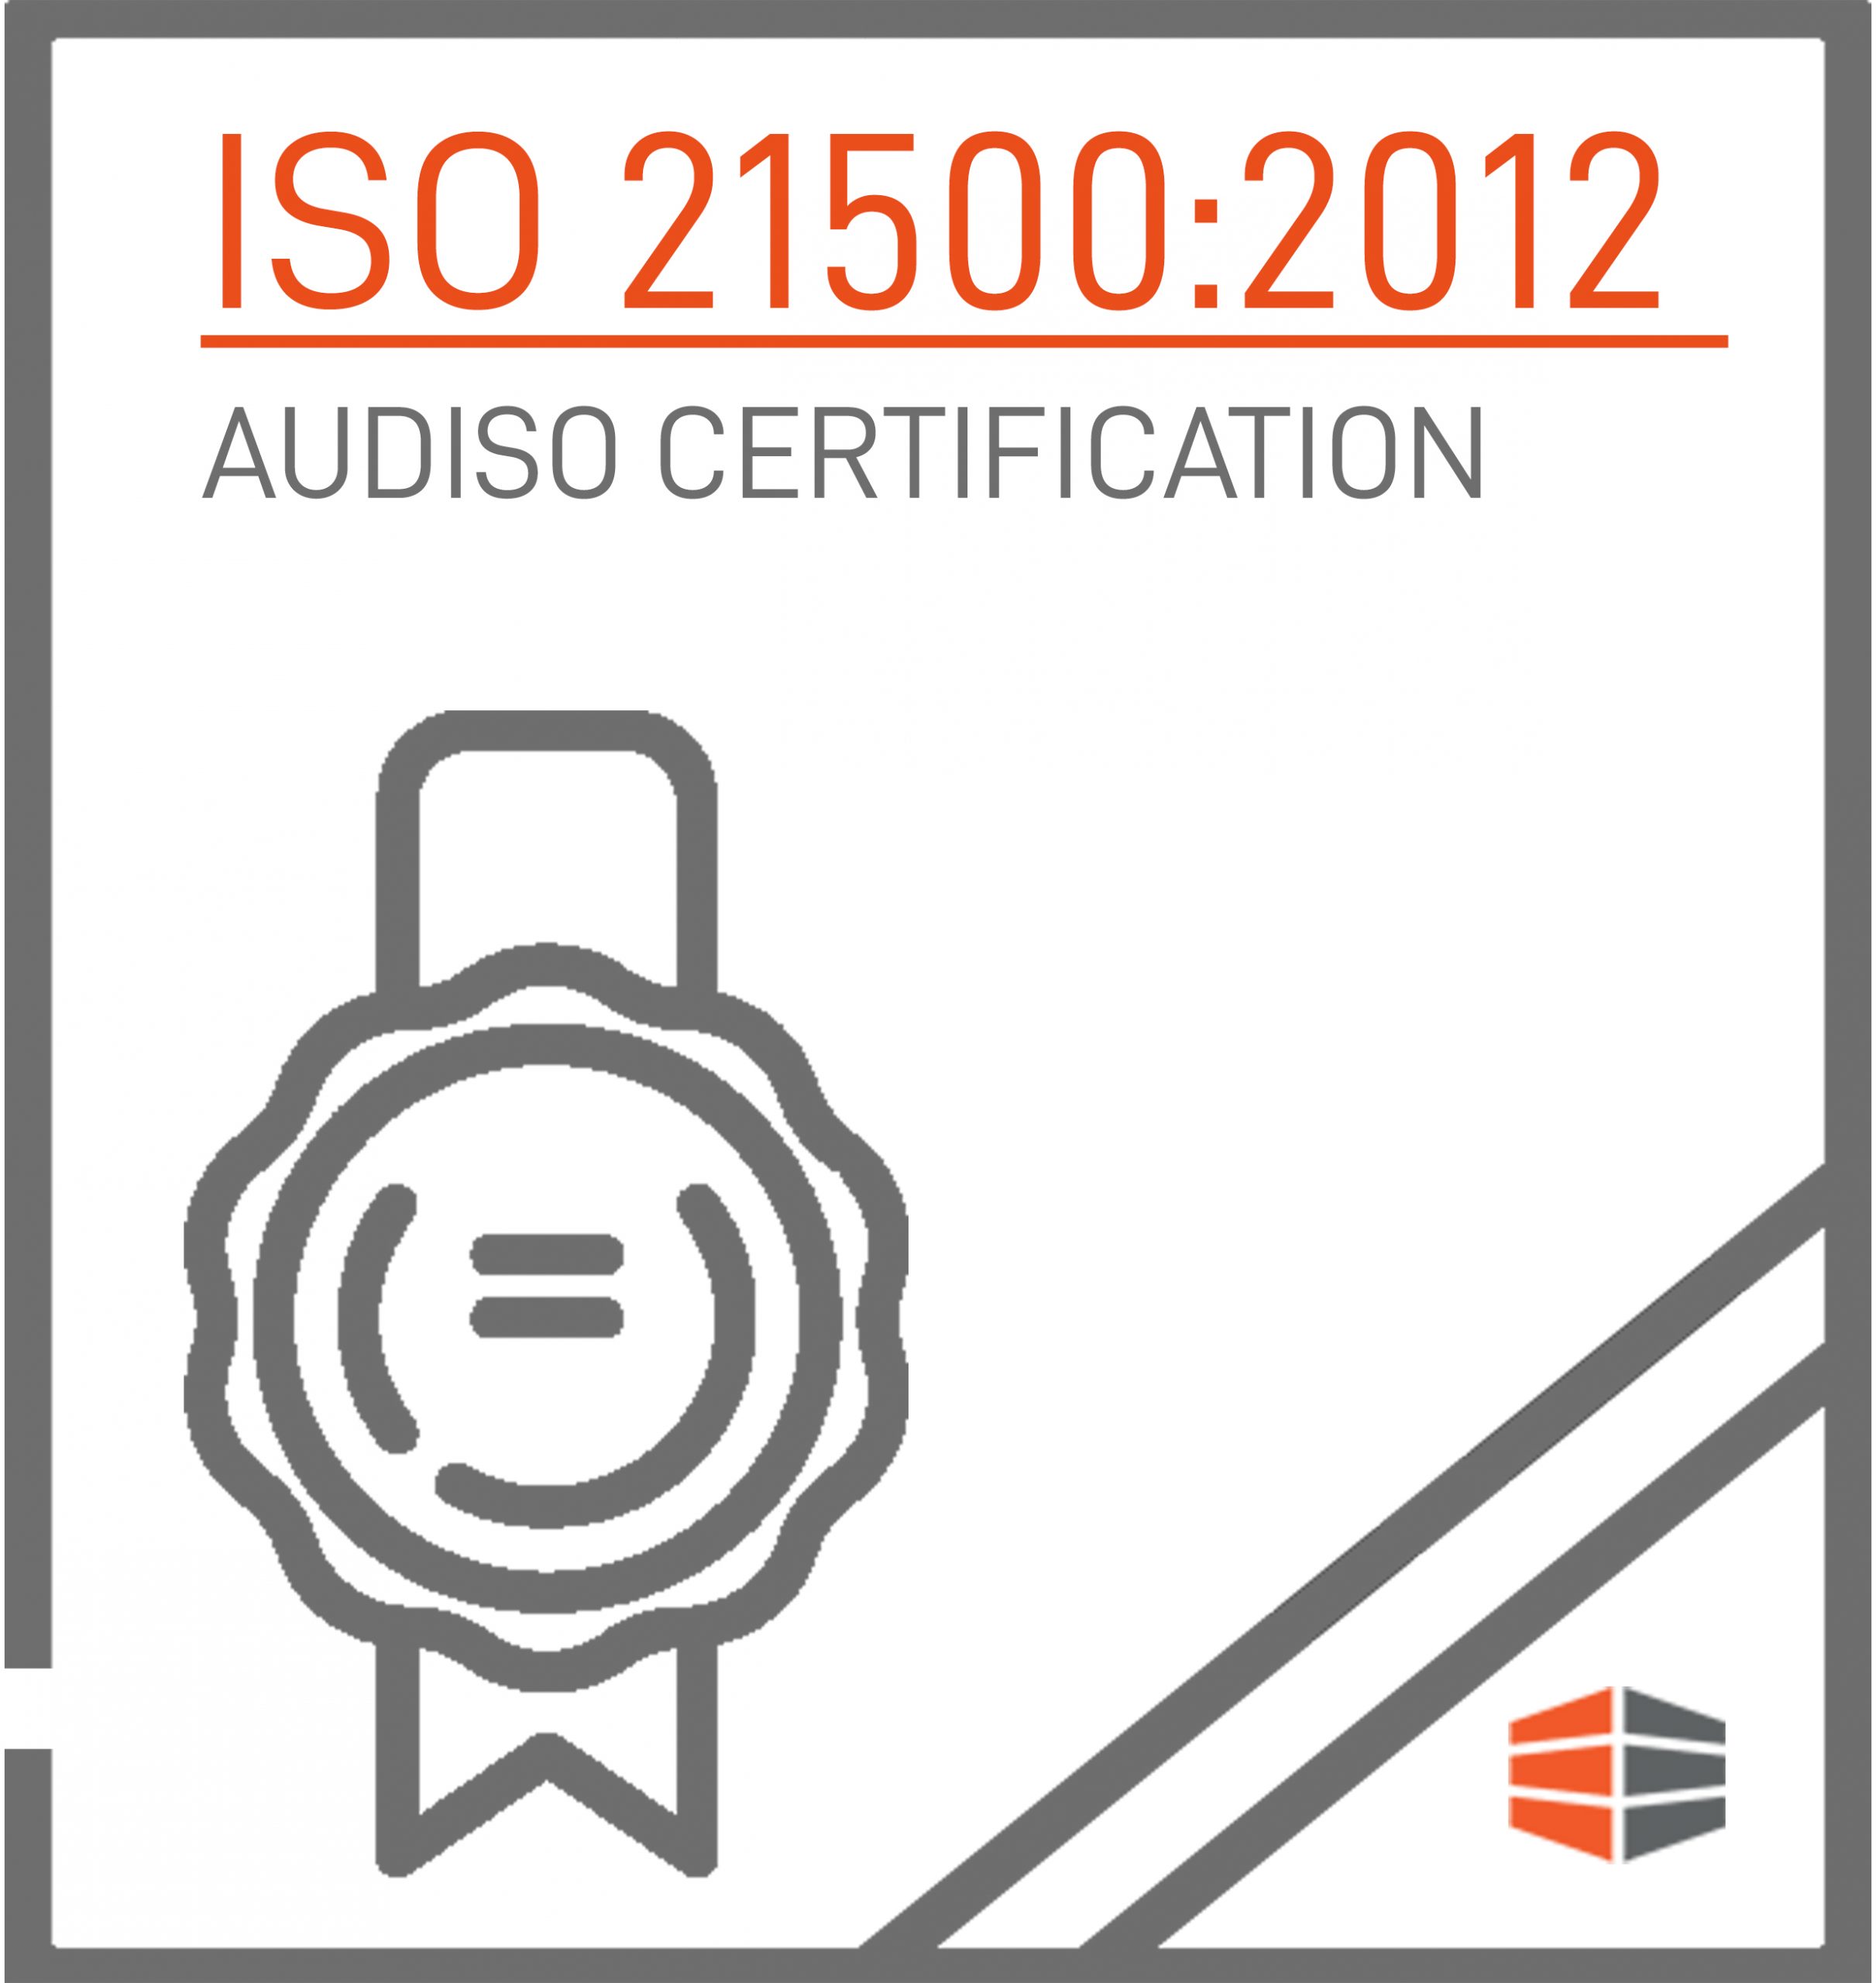 Certificazione ISO 21500:2012 Rilasciata da AUDISO CERTIFICATION